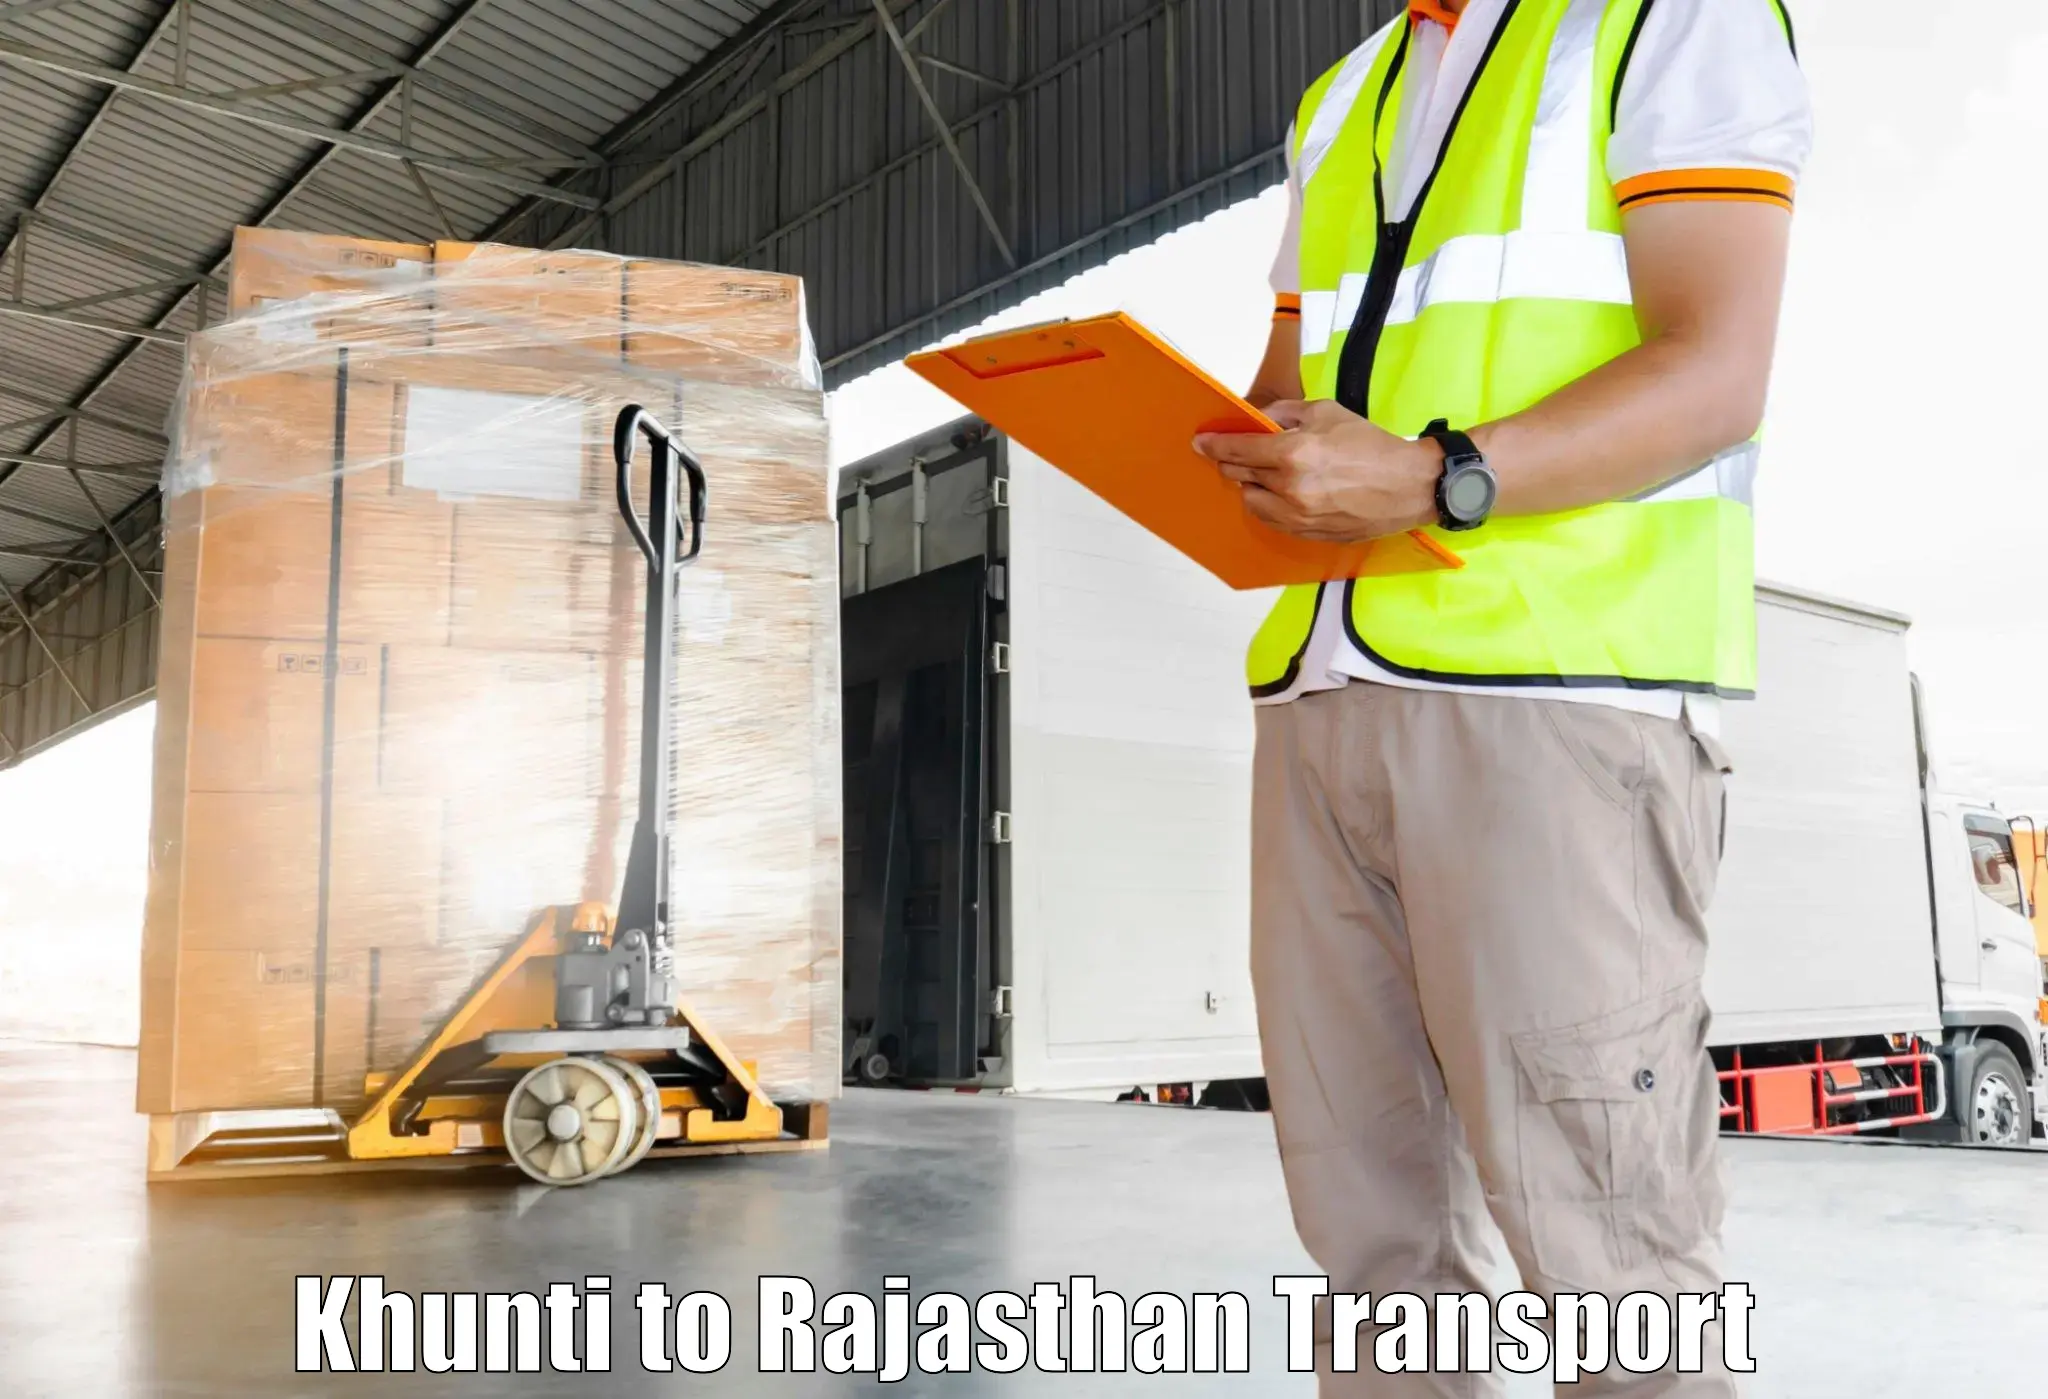 Nearest transport service Khunti to Kuchaman